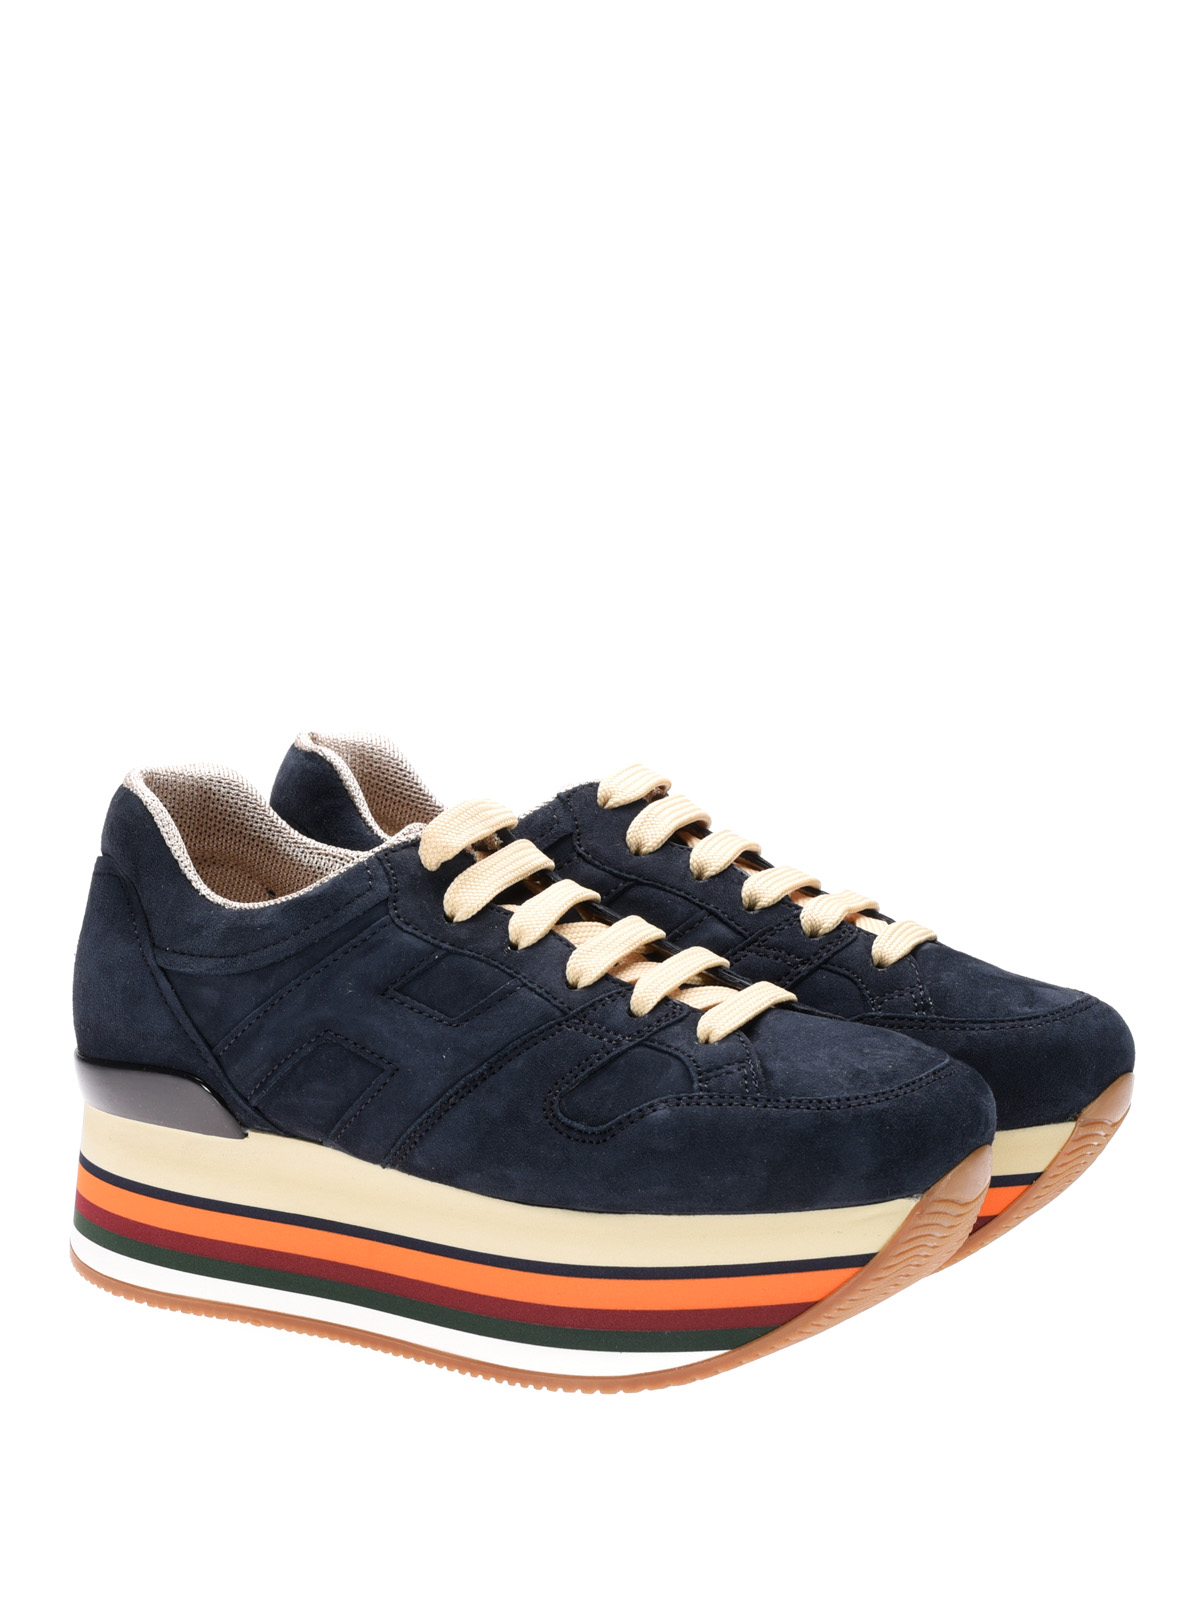 Hogan - Sneaker Maxi H222 blu in camoscio - sneakers - HXW2830T543CR0U810